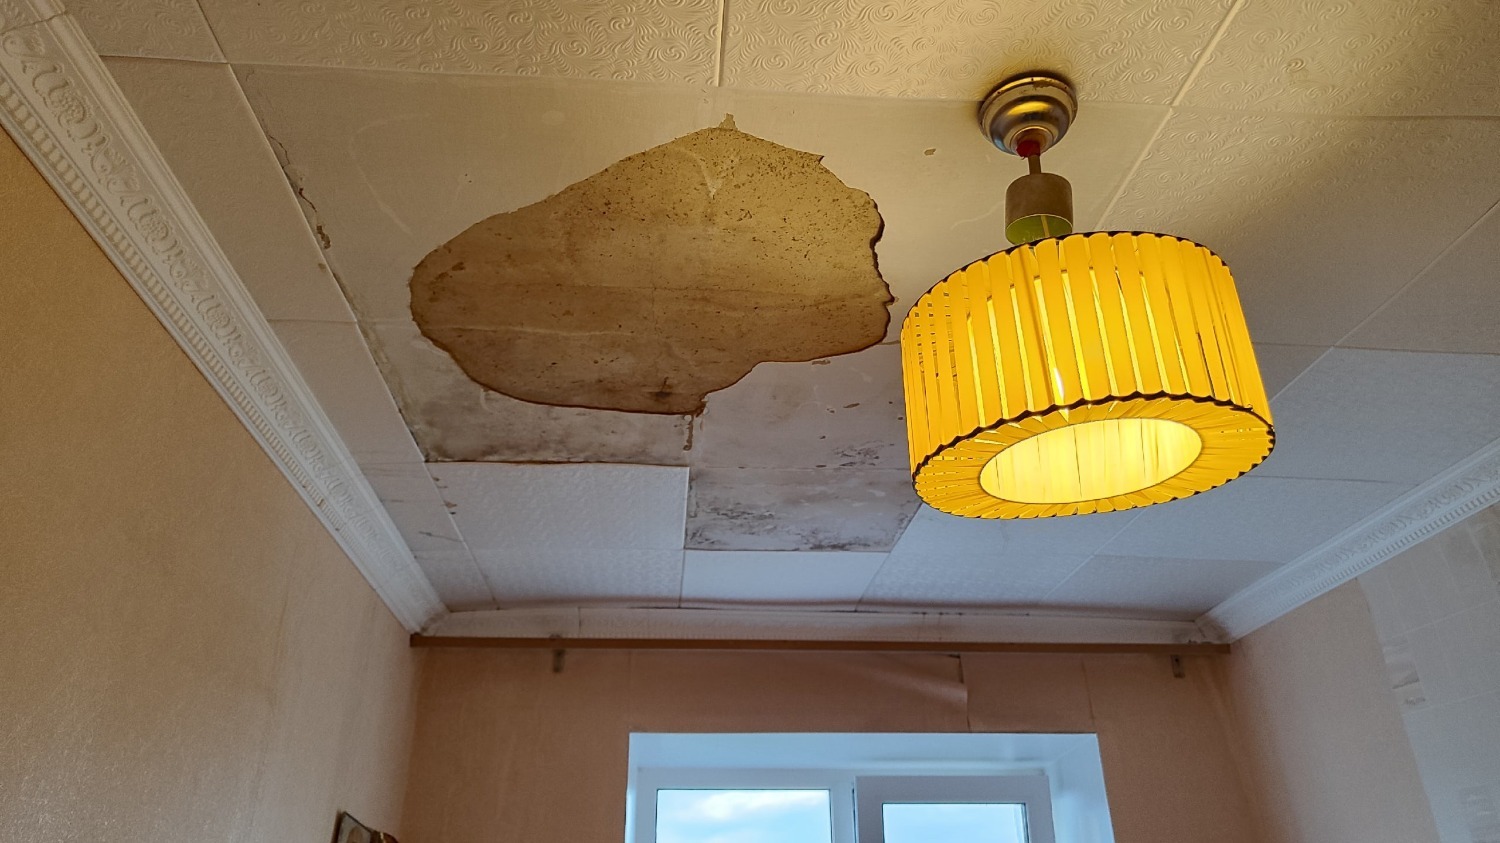 Соседней квартире повезло намного меньше: плесень на стенах, потолок обрушился, диван не подлежит восстановлению